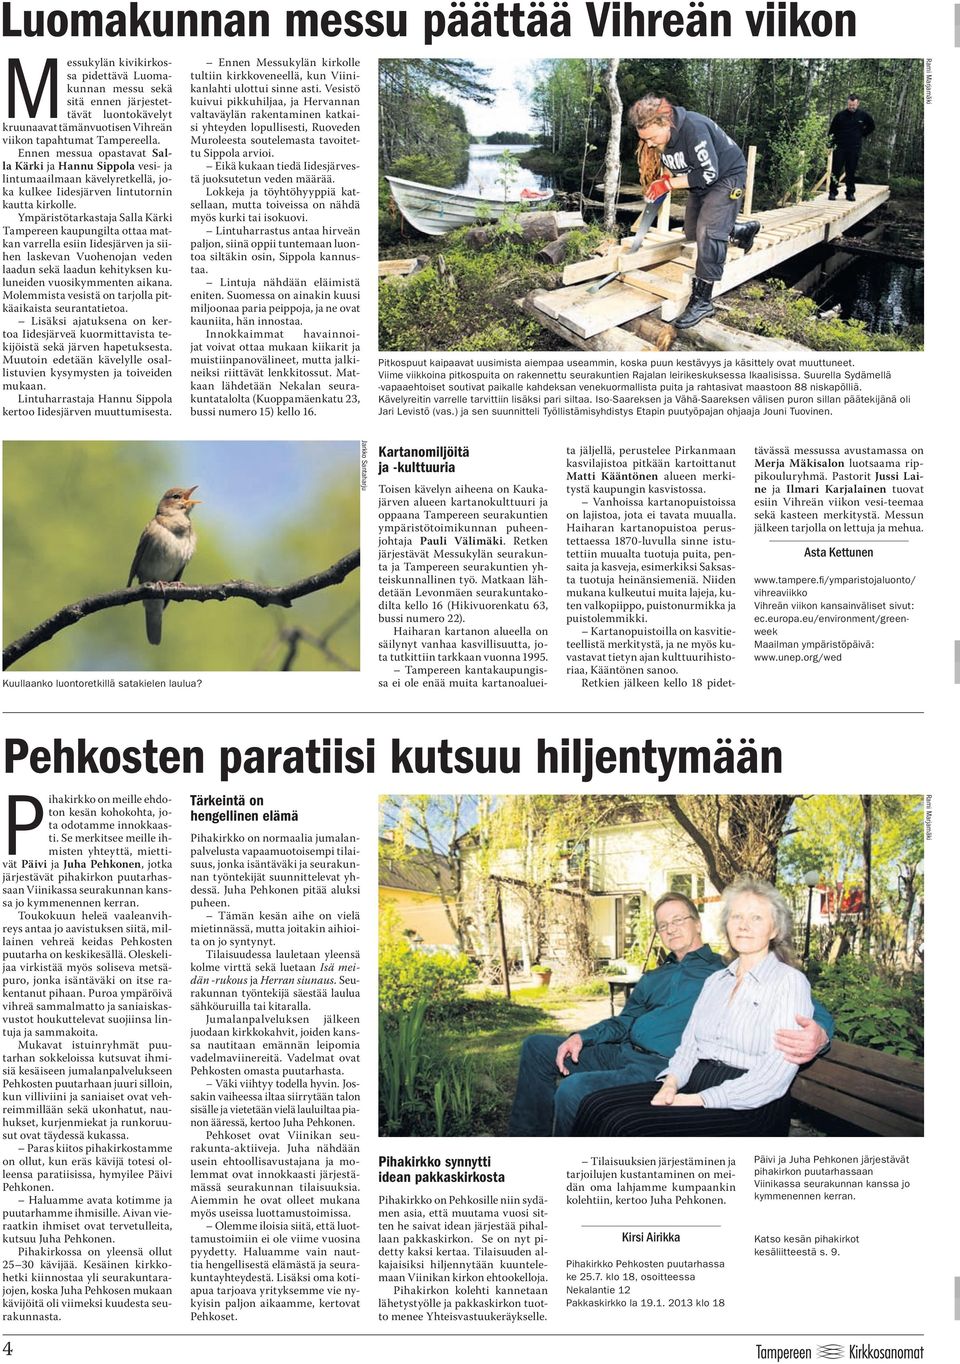 Ympäristötarkastaja Salla Kärki Tampereen kaupungilta ottaa matkan varrella esiin Iidesjärven ja siihen laskevan Vuohenojan veden laadun sekä laadun kehityksen kuluneiden vuosikymmenten aikana.